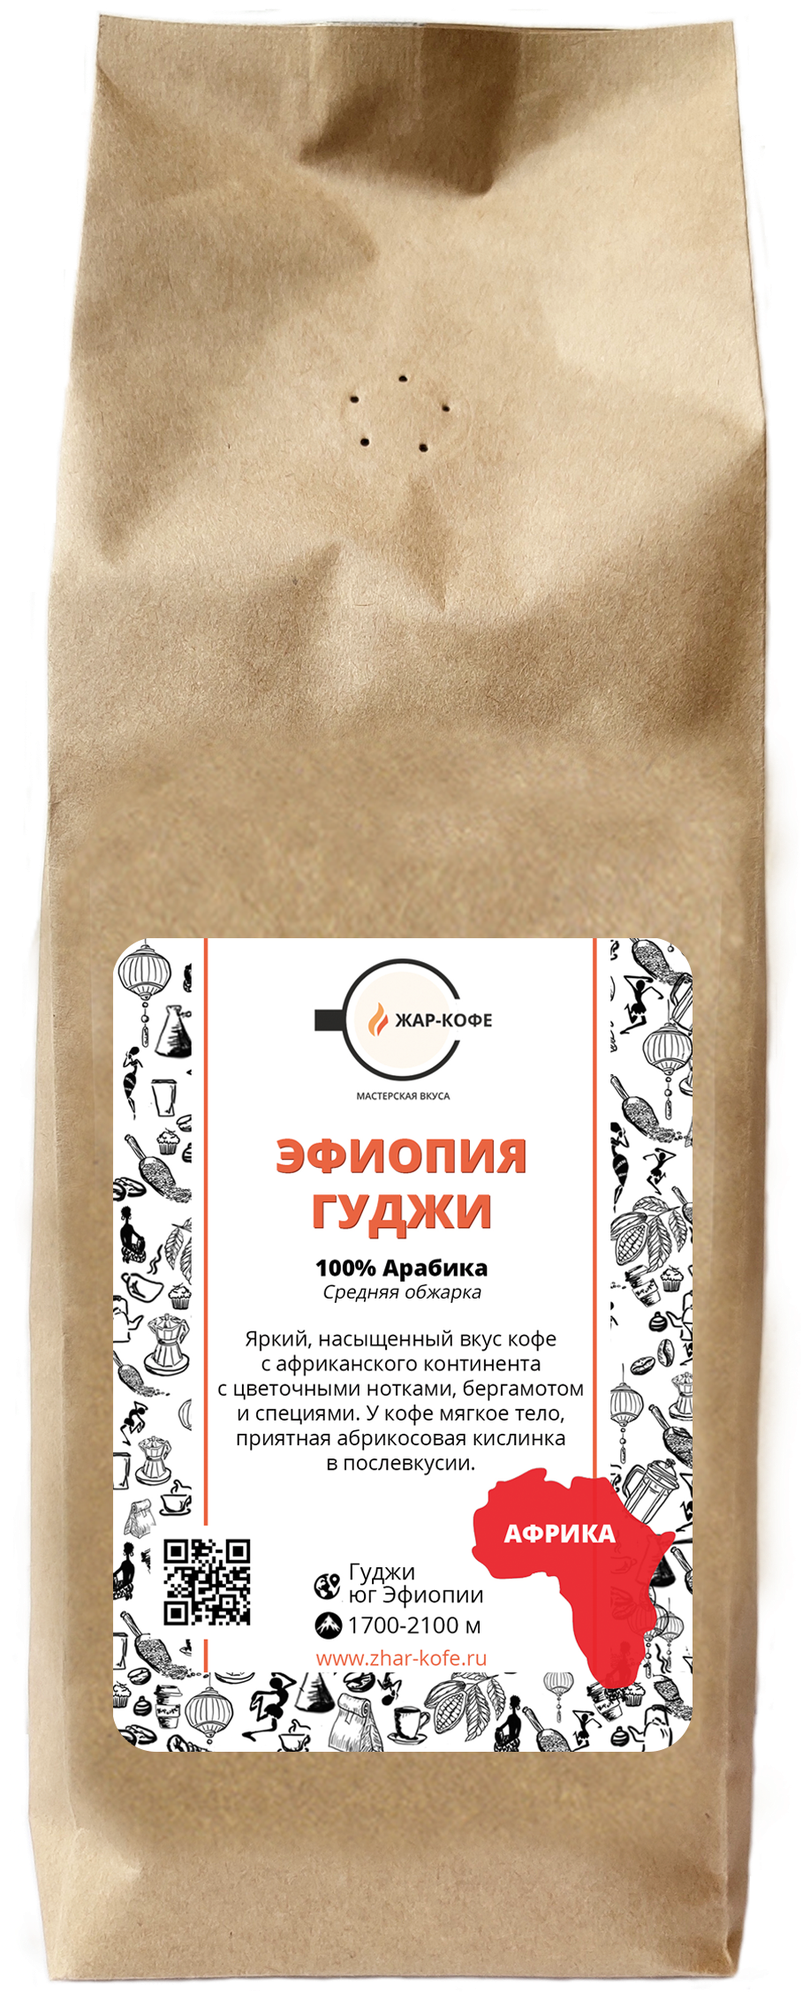 Кофе в зернах Жар-Кофе "эфиопия гуджи" - 500 гр.